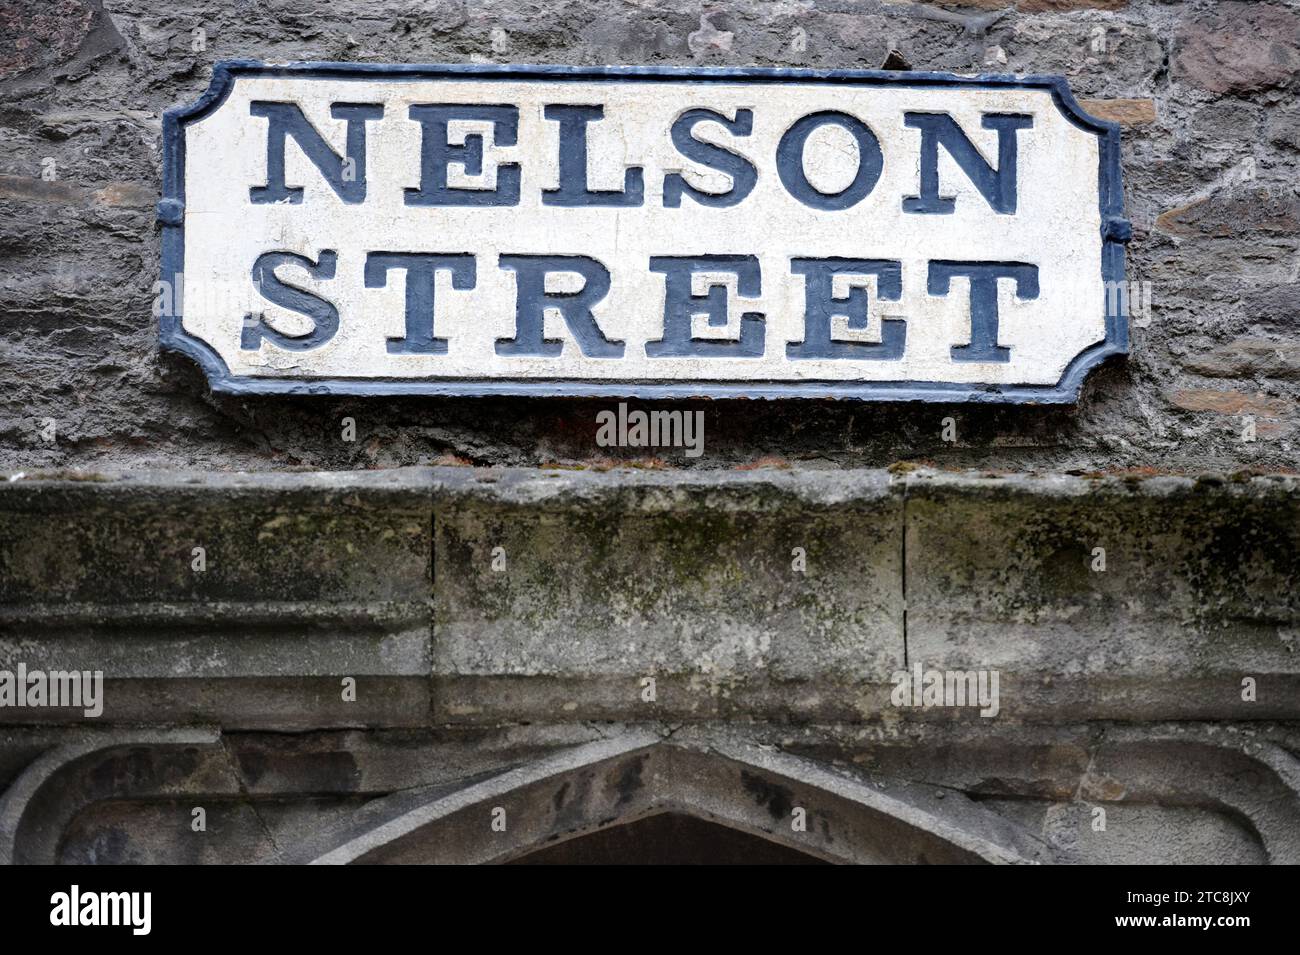 Letrero de la calle por encima del arco a Broad Street desde la histórica sección de la muralla de la ciudad de Nelson Street en Bristol, Reino Unido Foto de stock